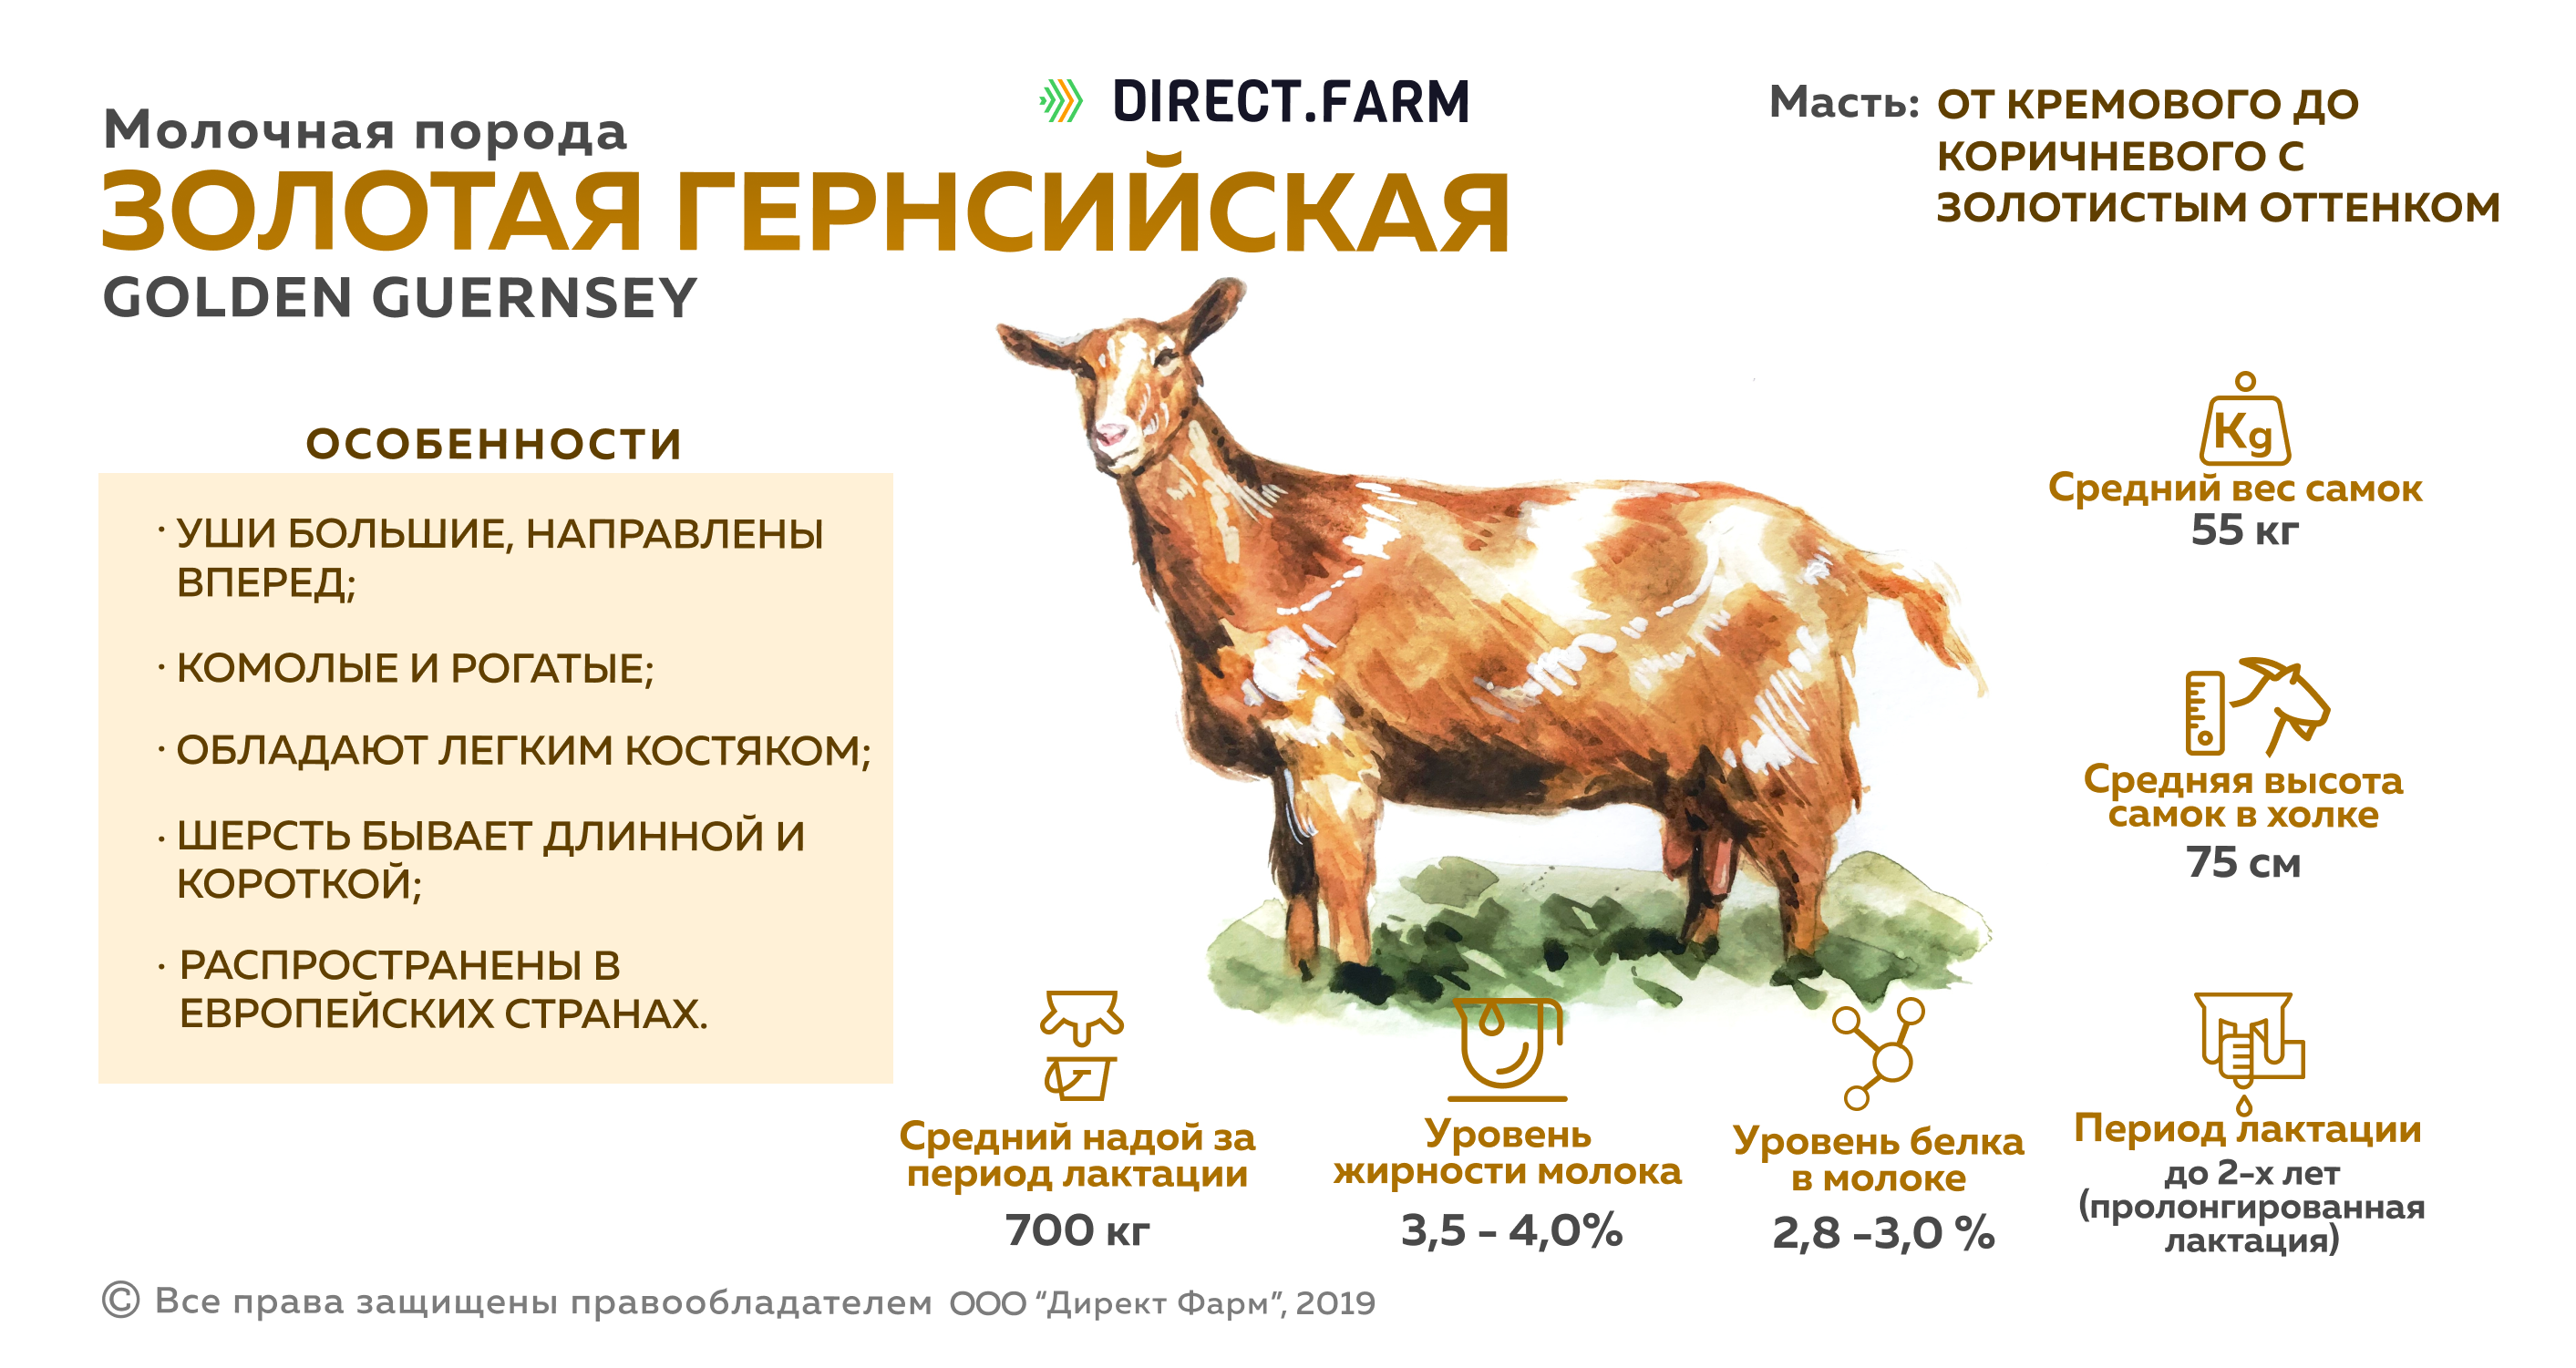 Продуктивность молока пород коз. Золотая Гернсийская порода коз. Молочные породы коз сравнительная таблица. Таблица продуктивности коз. Характеристика пород коз